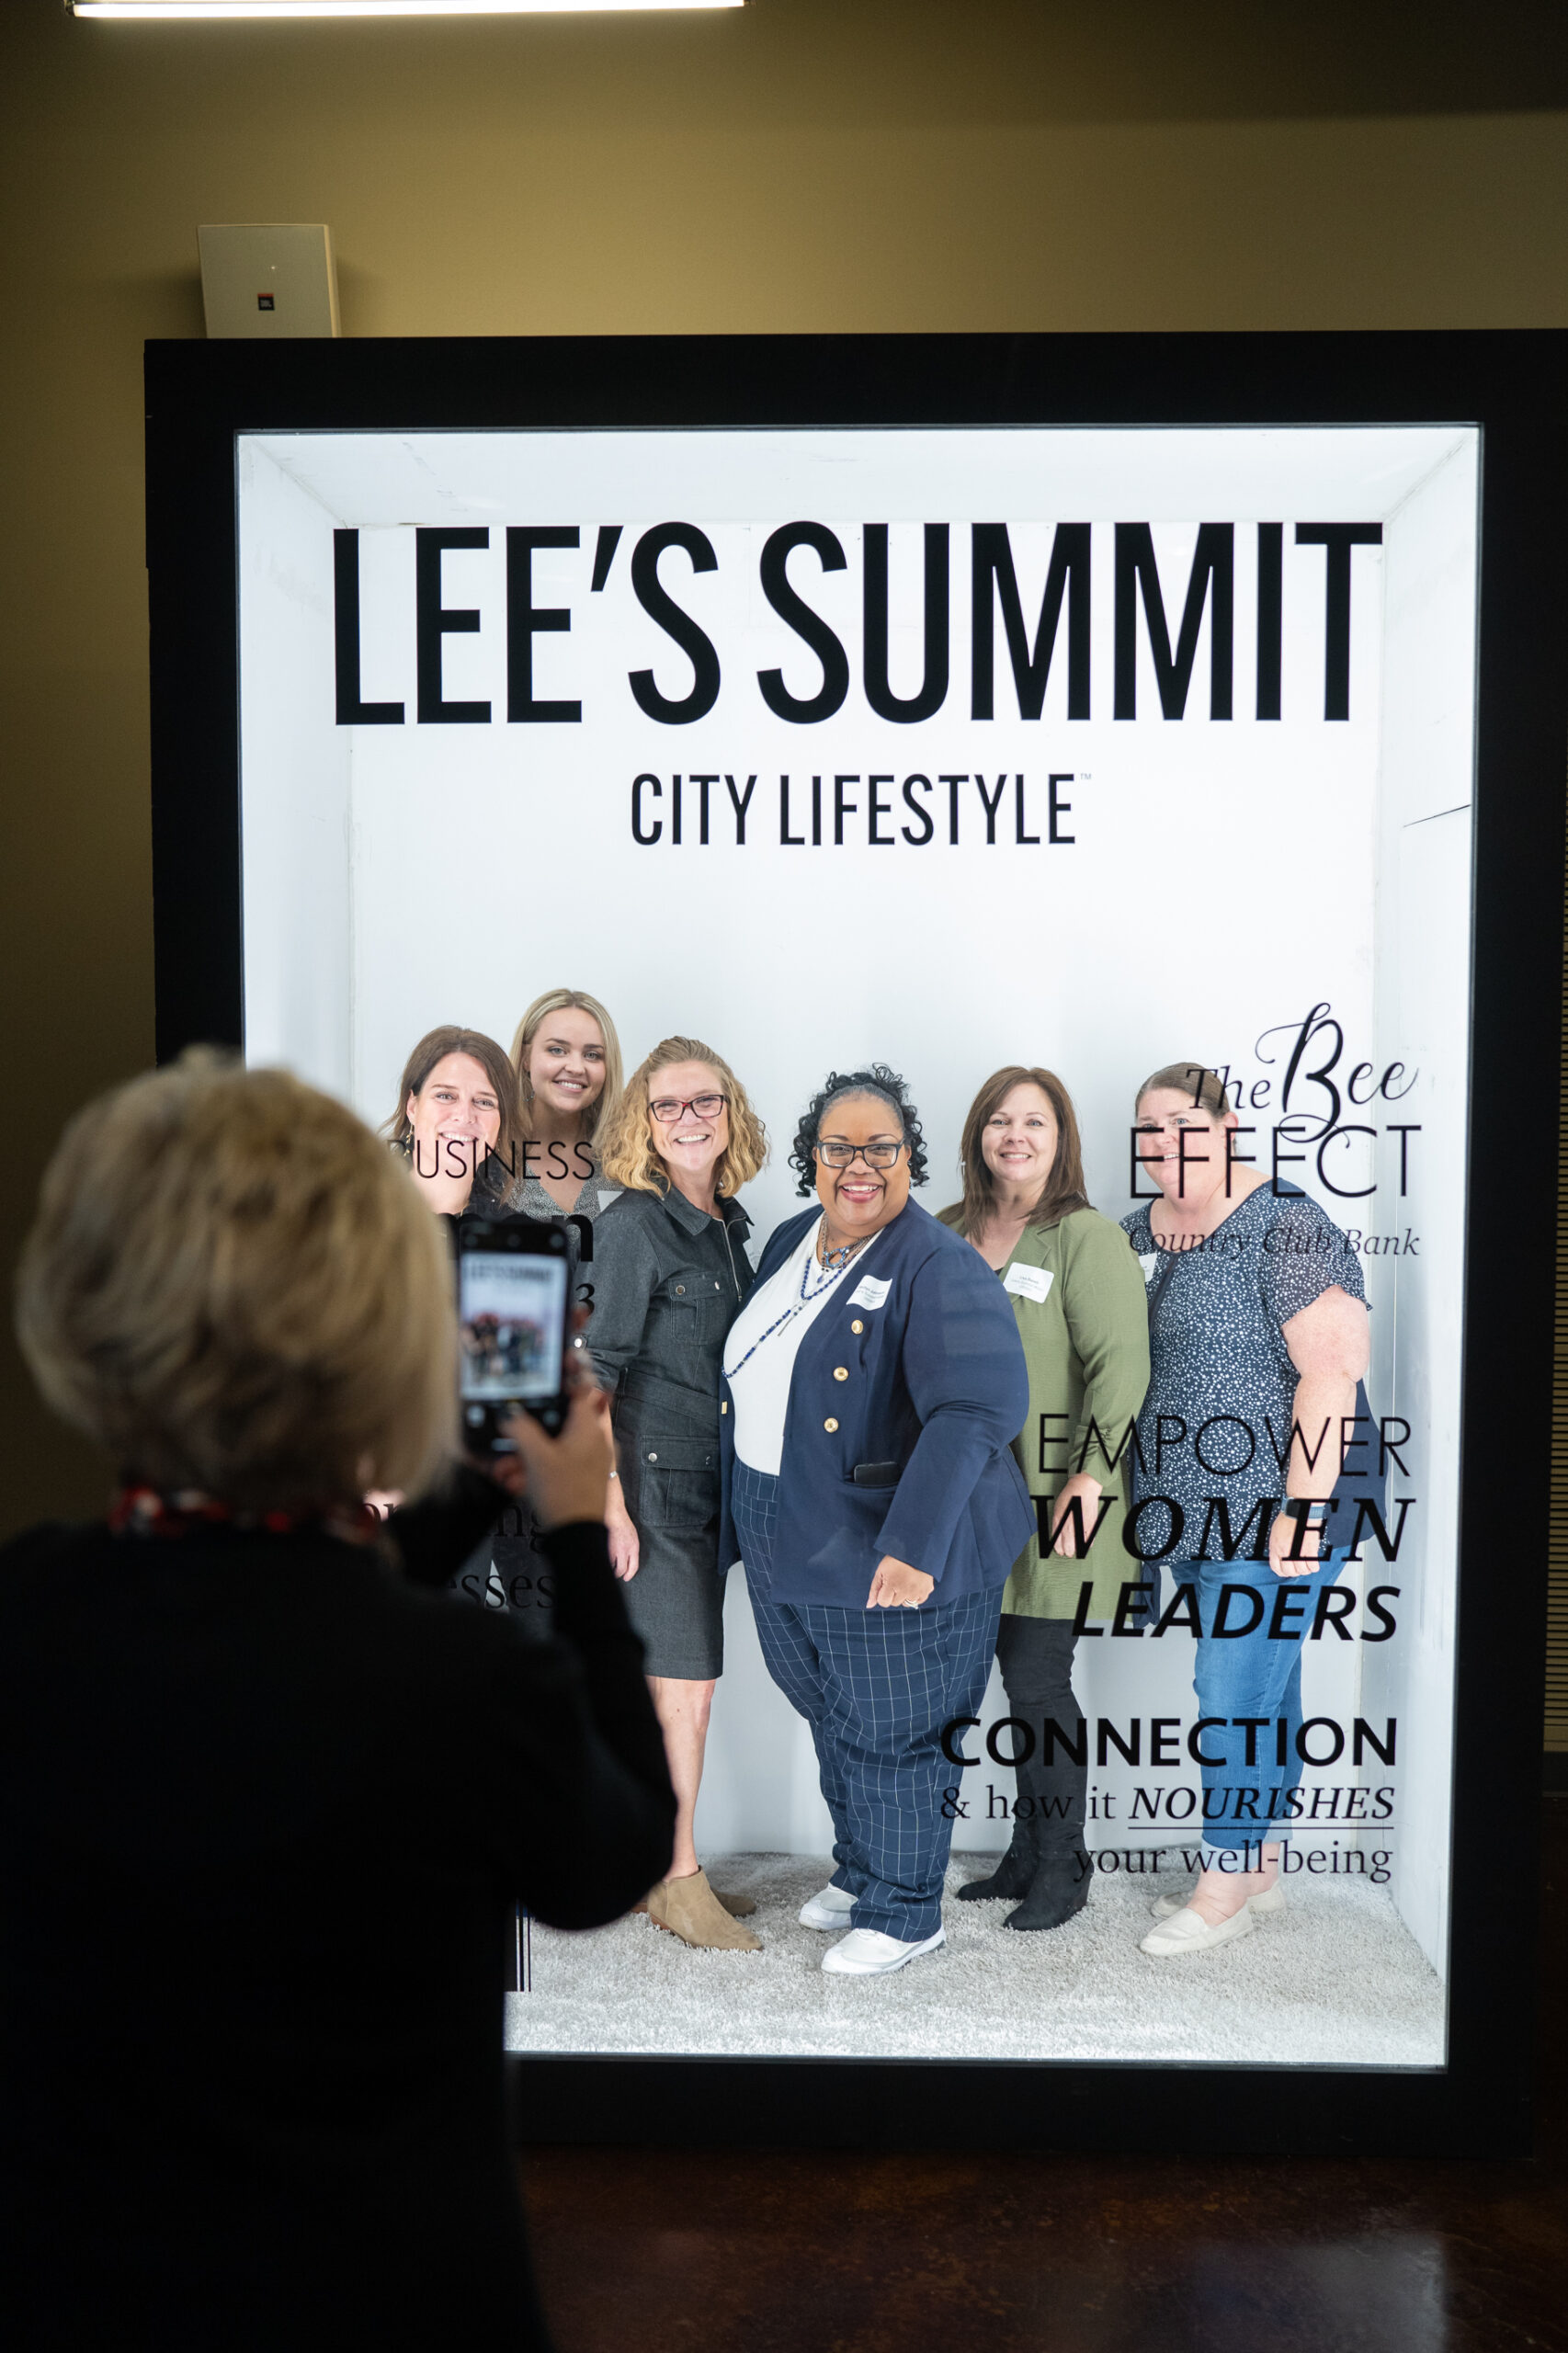 Lee's Summit